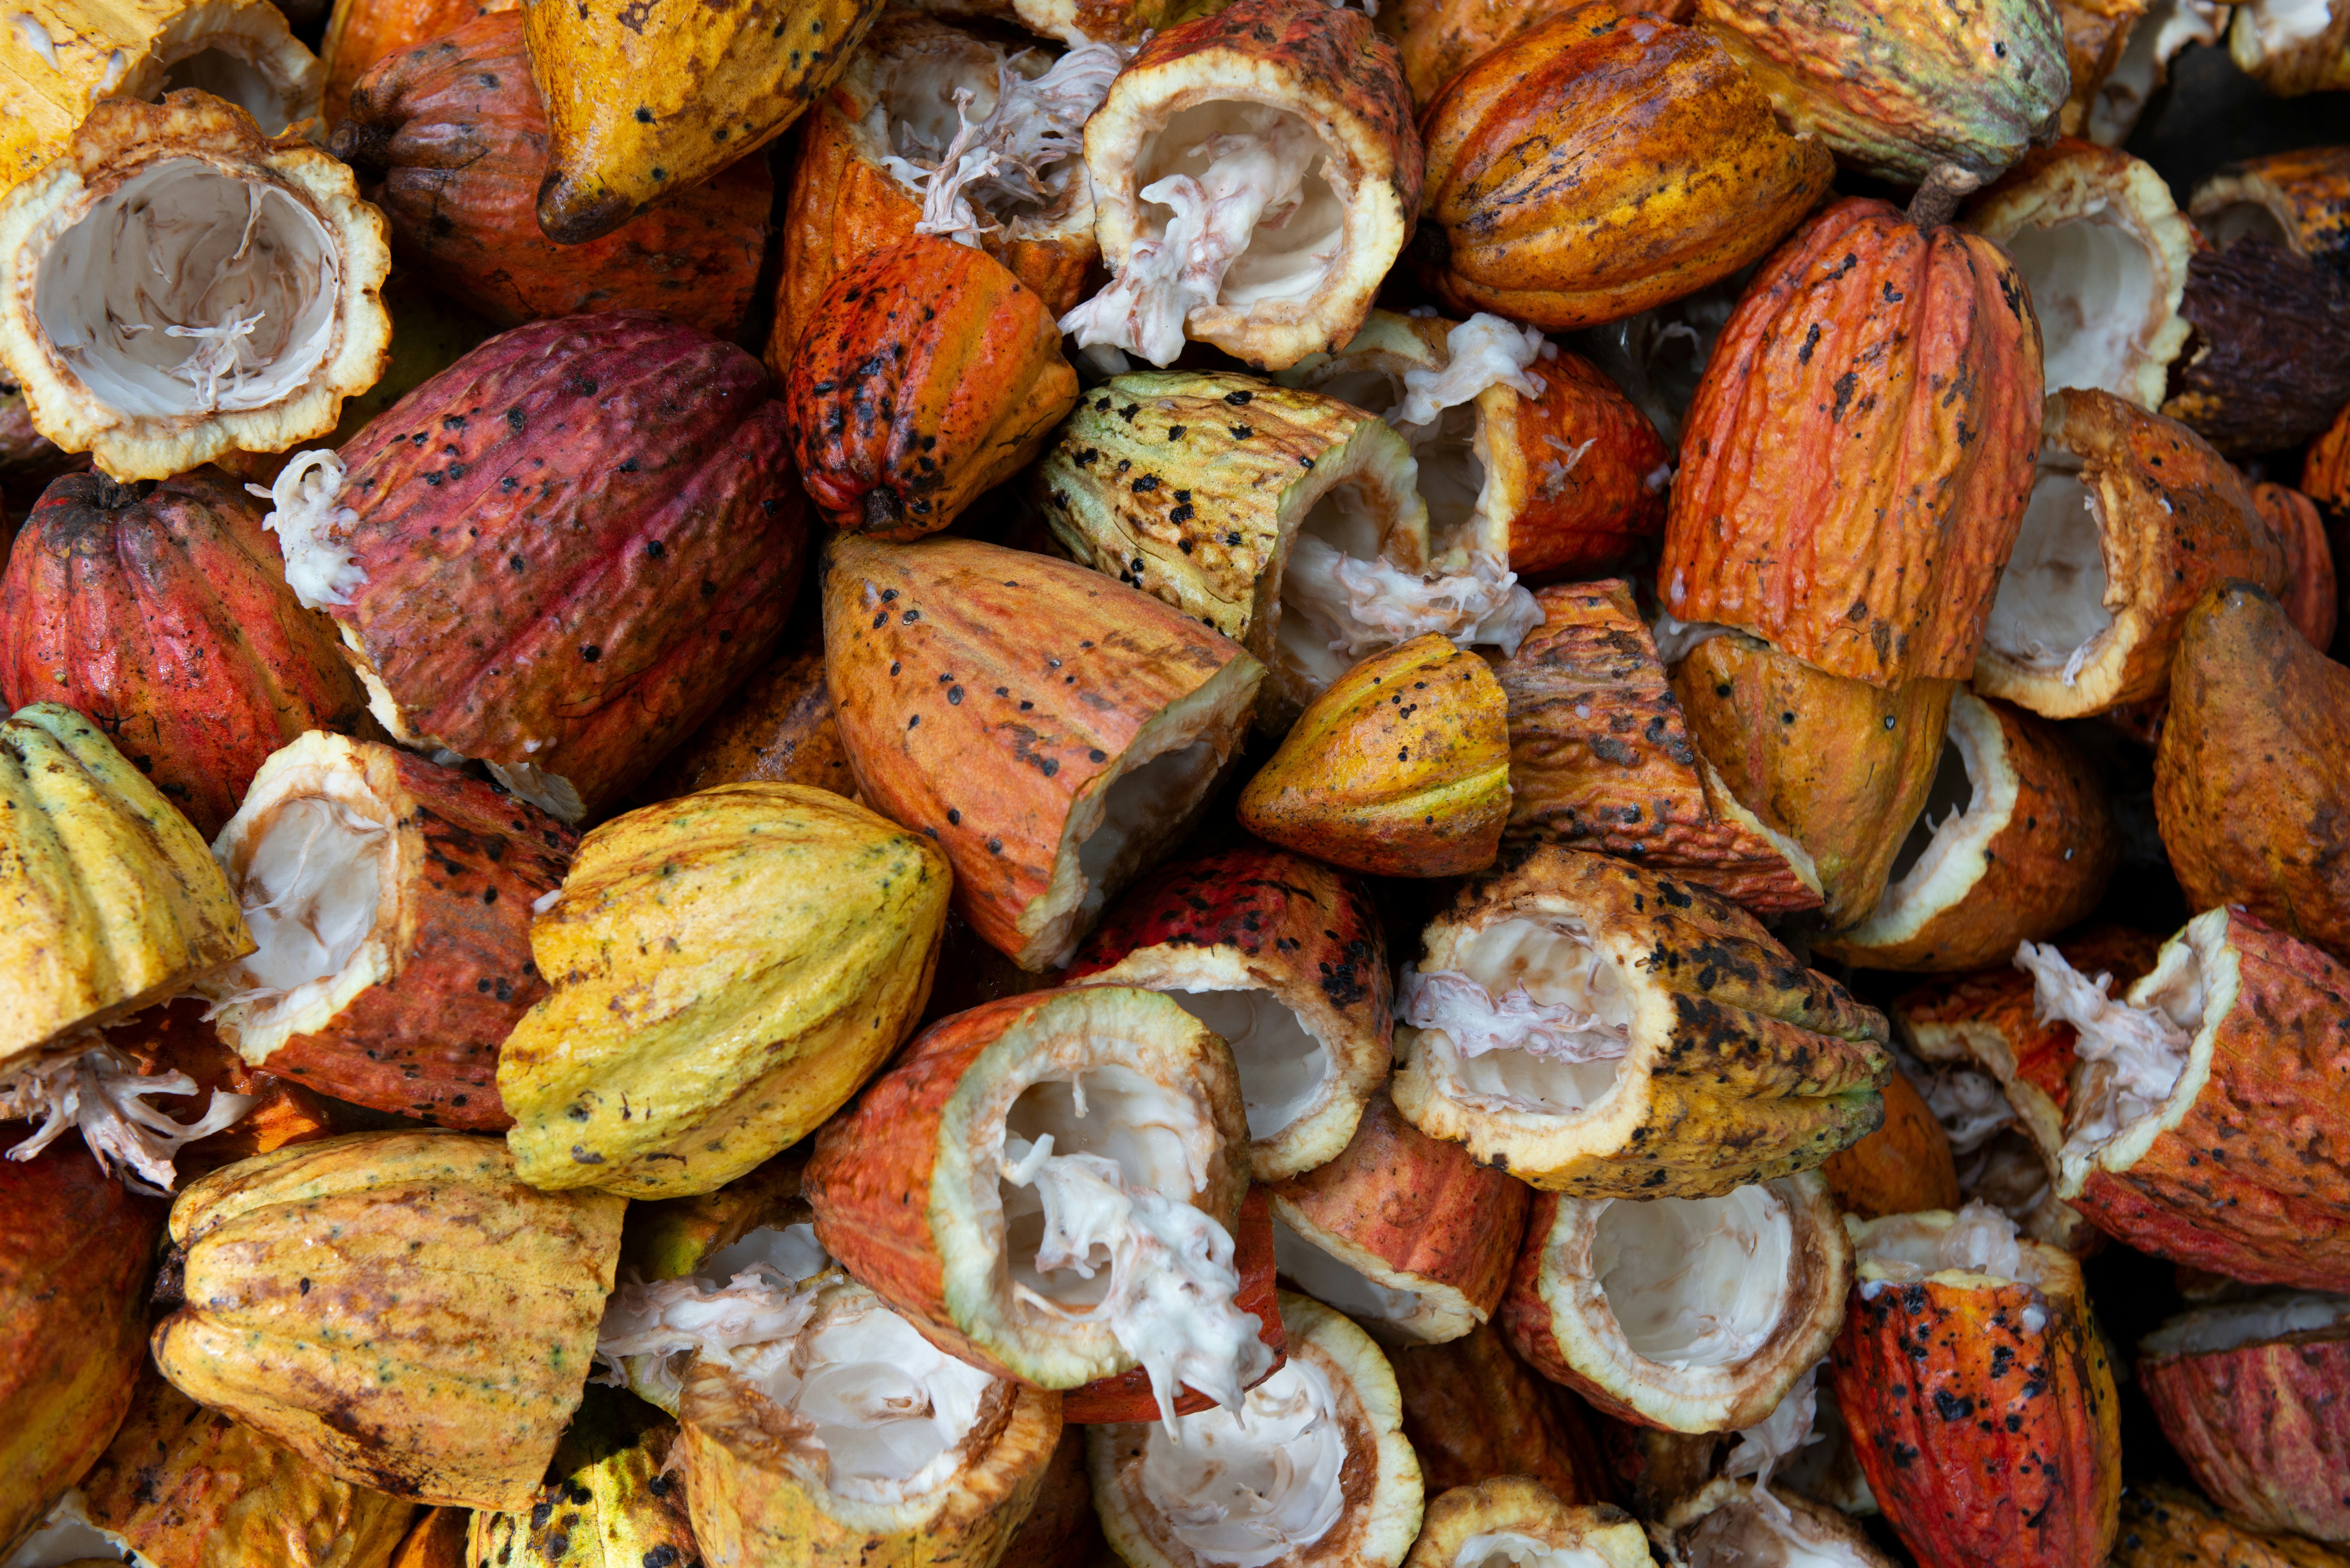 découvrez tout sur le cacao, son origine, ses bienfaits, ses utilisations et son histoire fascinante.